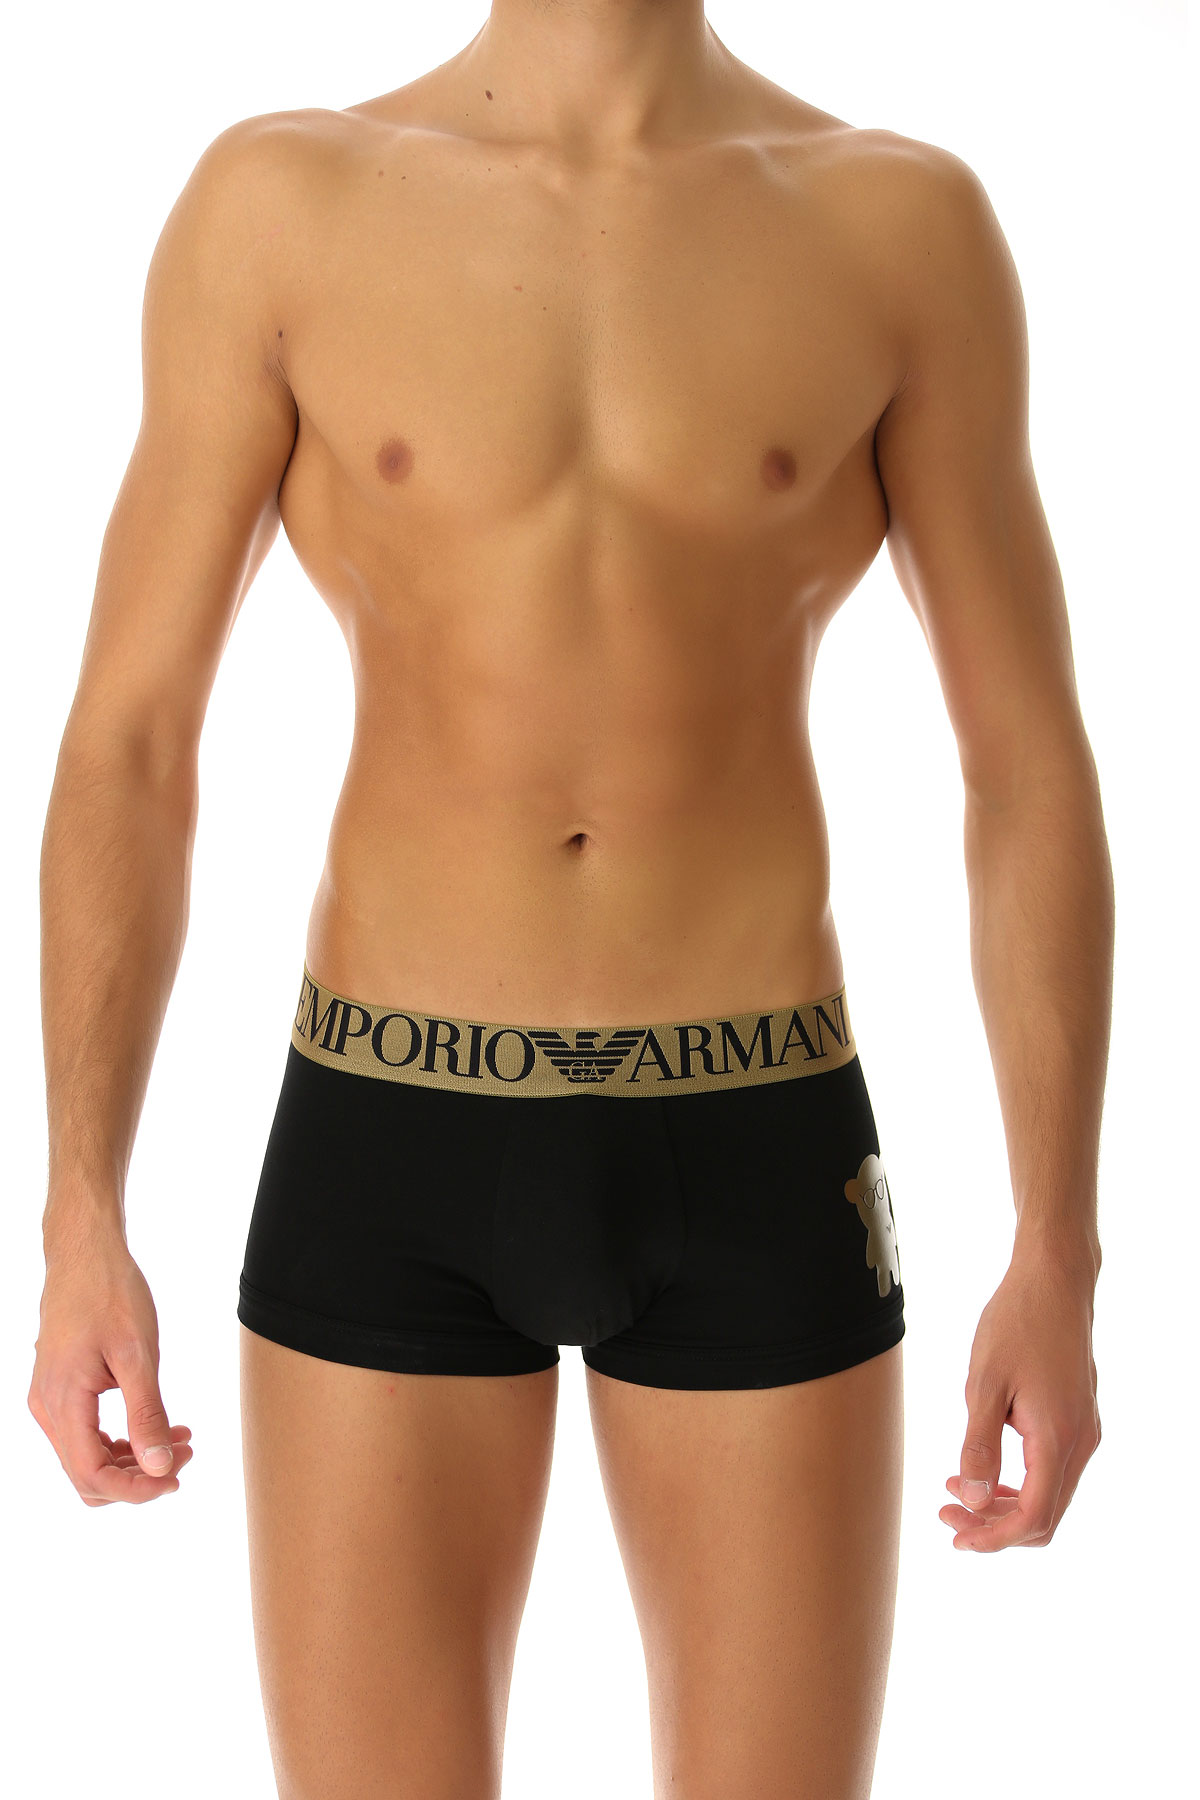 Emporio Armani Boxer Shorts für Herren, Unterhose, Short, Boxer Günstig im Sale, Schwarz, Baumwolle, 2017, L L M M S